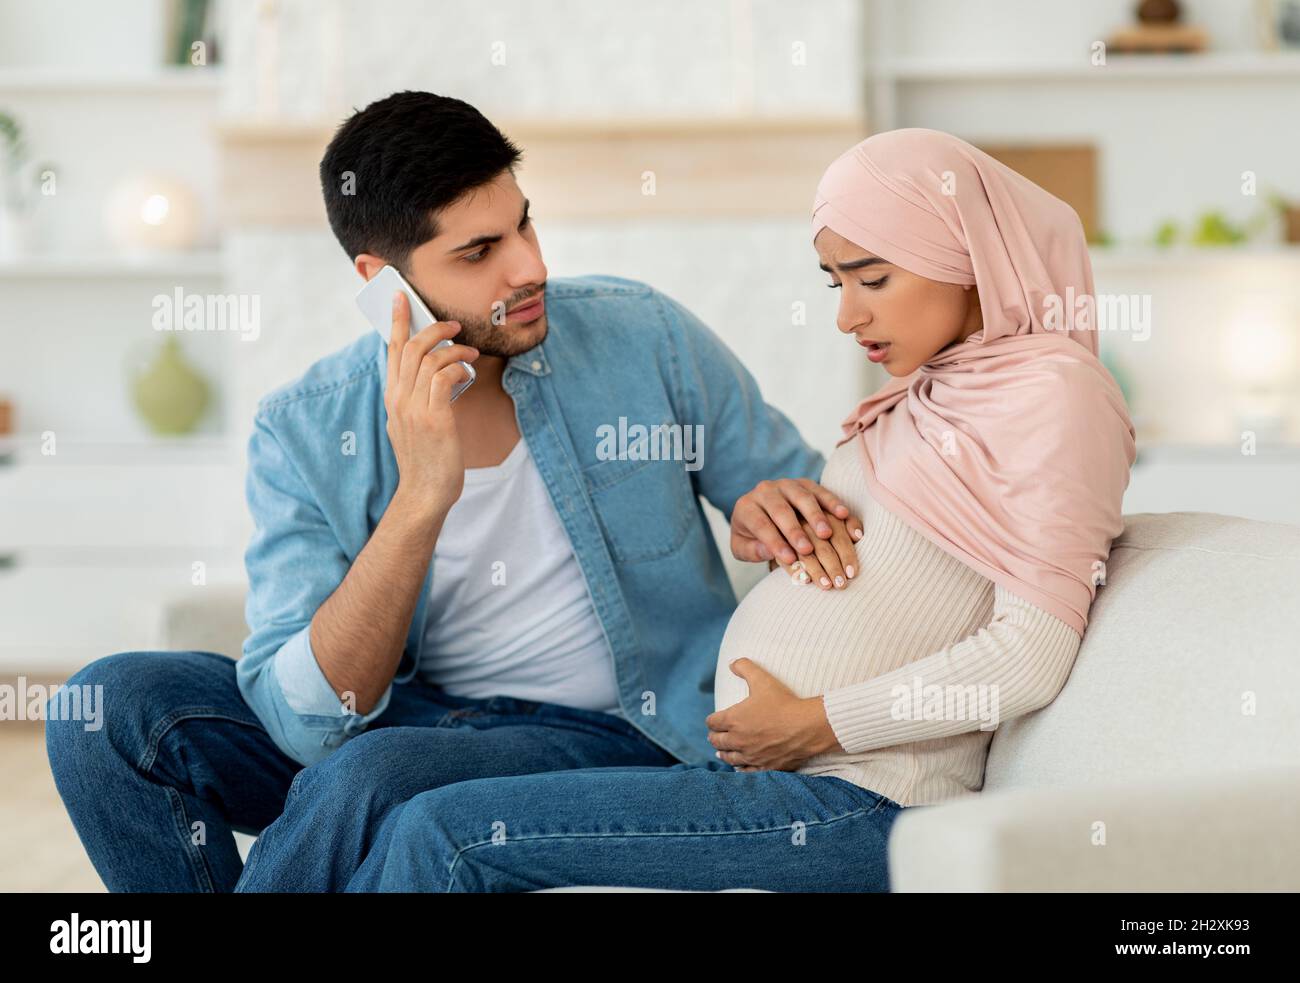 Schwanger arabische Frau mit pränatalen Kontraktionen, besorgt Ehemann rufen Arzt, Handy, häusliche Einrichtung Stockfoto